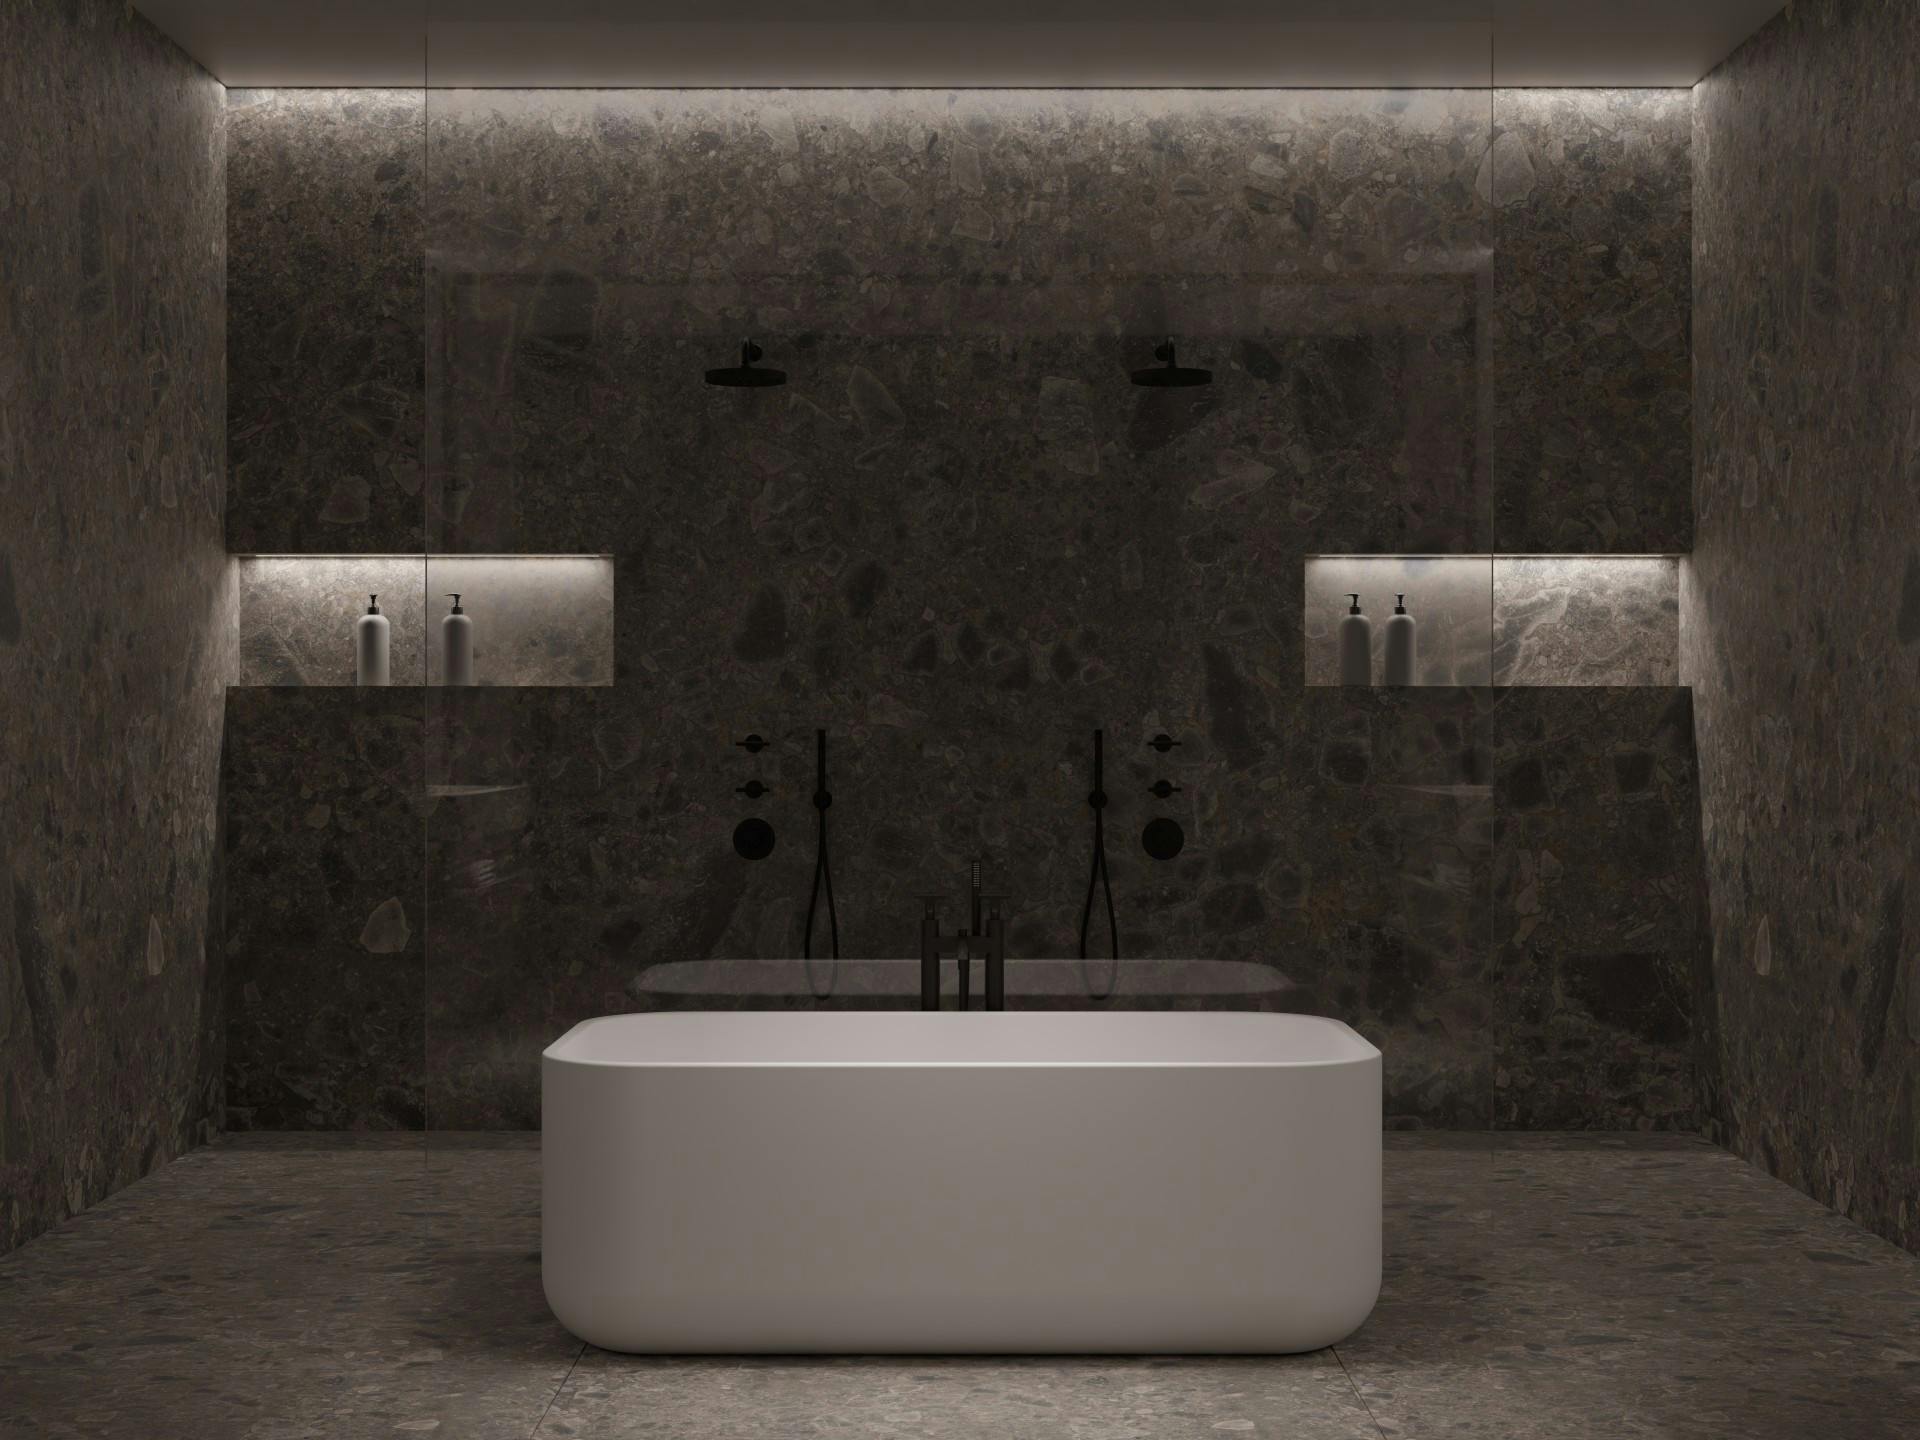 Numero immagine 36 della sezione corrente di The Cave: a bathroom designed by Colin Seah that pays homage to primitive rituals di Cosentino Italia